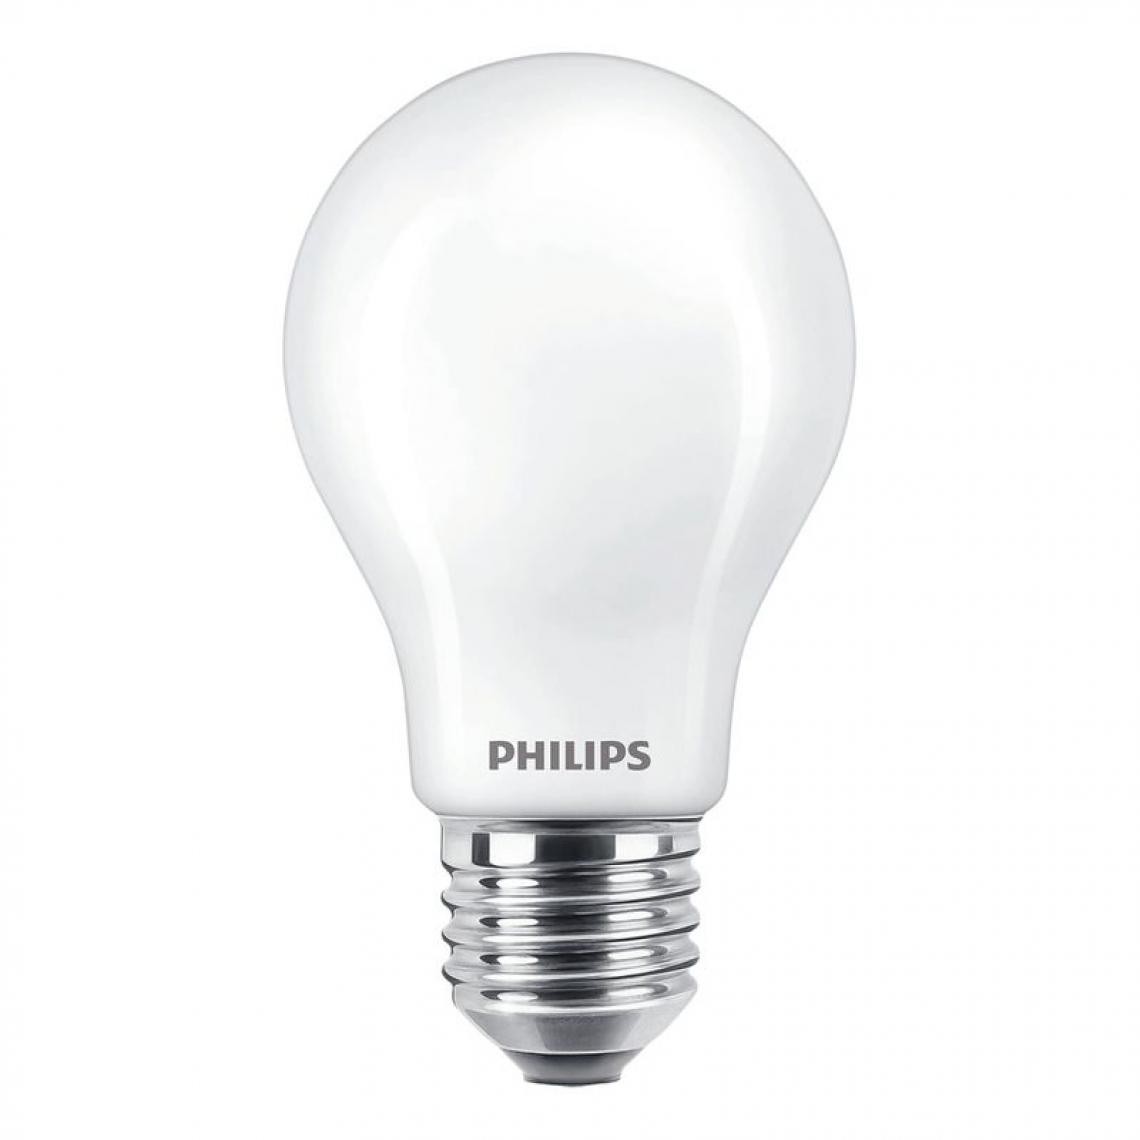 Philips - Lot de 2 ampoules LED standard PHILIPS E27 60w - Ampoules LED